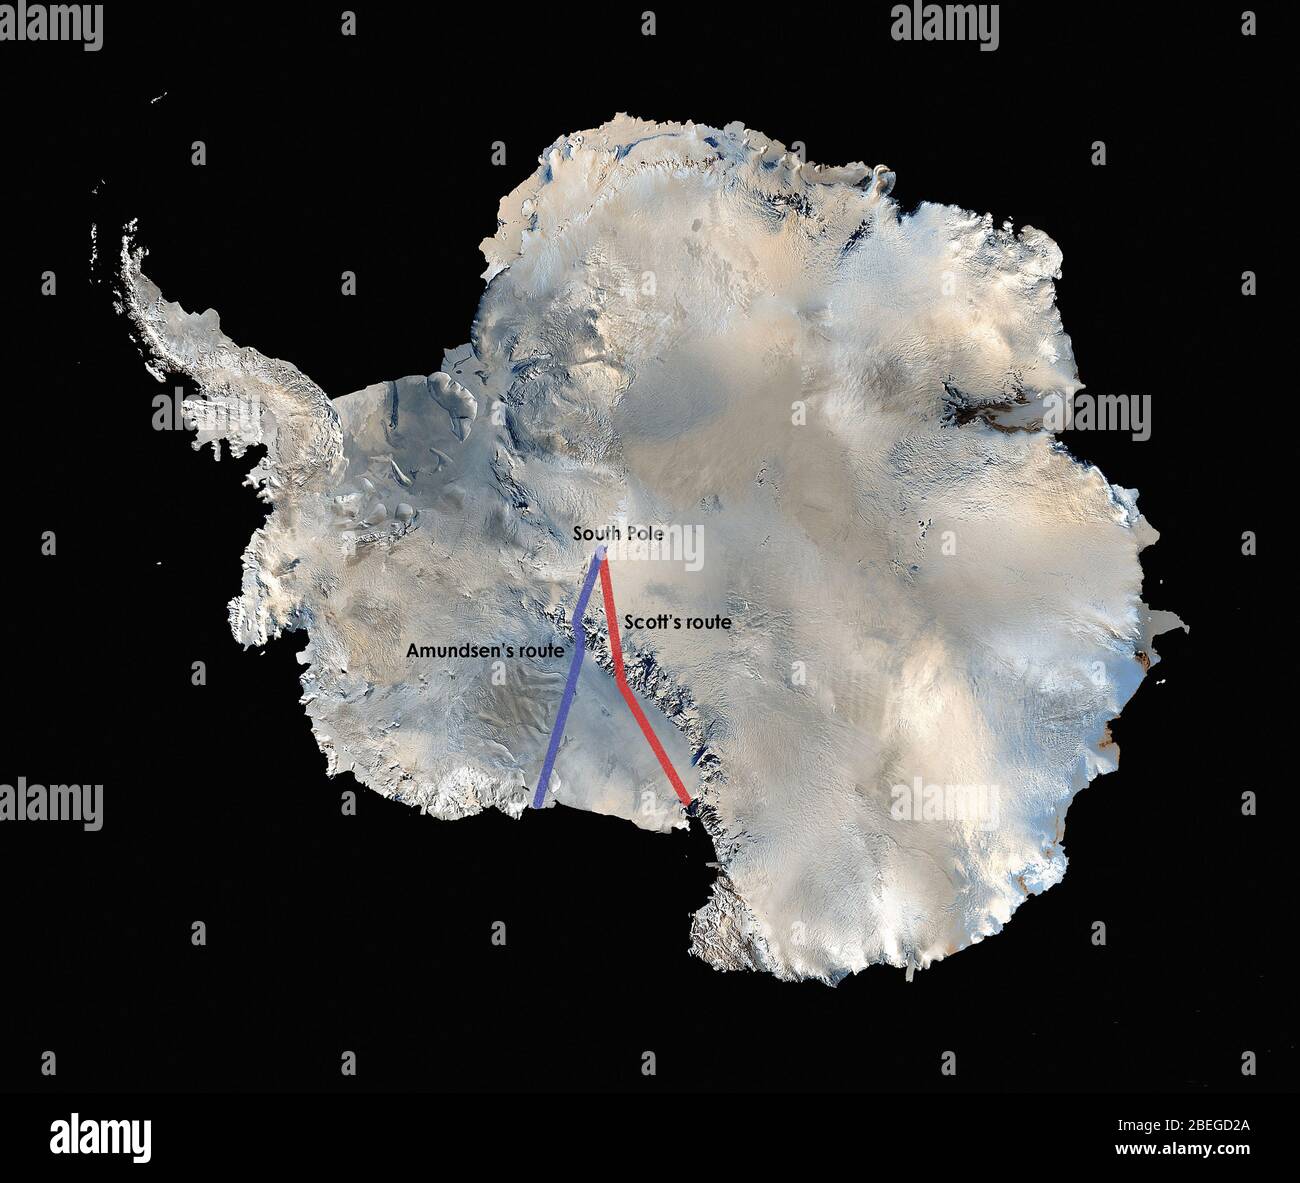 Die weltweit erste hochauflösende, dreidimensionale, farbgetreue Karte der Antarktis wurde aus mehr als 1,100 Bildern des Landsat 7-Satelliten erstellt. Um das Landsat-Bildmosaik der Antarktis (LIMA) zu erstellen, kombinierten wissenschaftliche Visualisierer Landsat 7 Szenen (aufgenommen zwischen 1999 und 2001), ein digitales Höhenmodell und Felddatenmessungen. Es dauerte Jahre, bis das ganze zusammengebracht wurde, um es 2007 zu veröffentlichen. Die NASA arbeitete mit der USGS, der National Science Foundation und dem British Antarctic Survey zusammen, um die Karte des höchsten, trockensten, kältesten, windigsten und hellsten Meeresbeckens der Erde zu erstellen Stockfoto